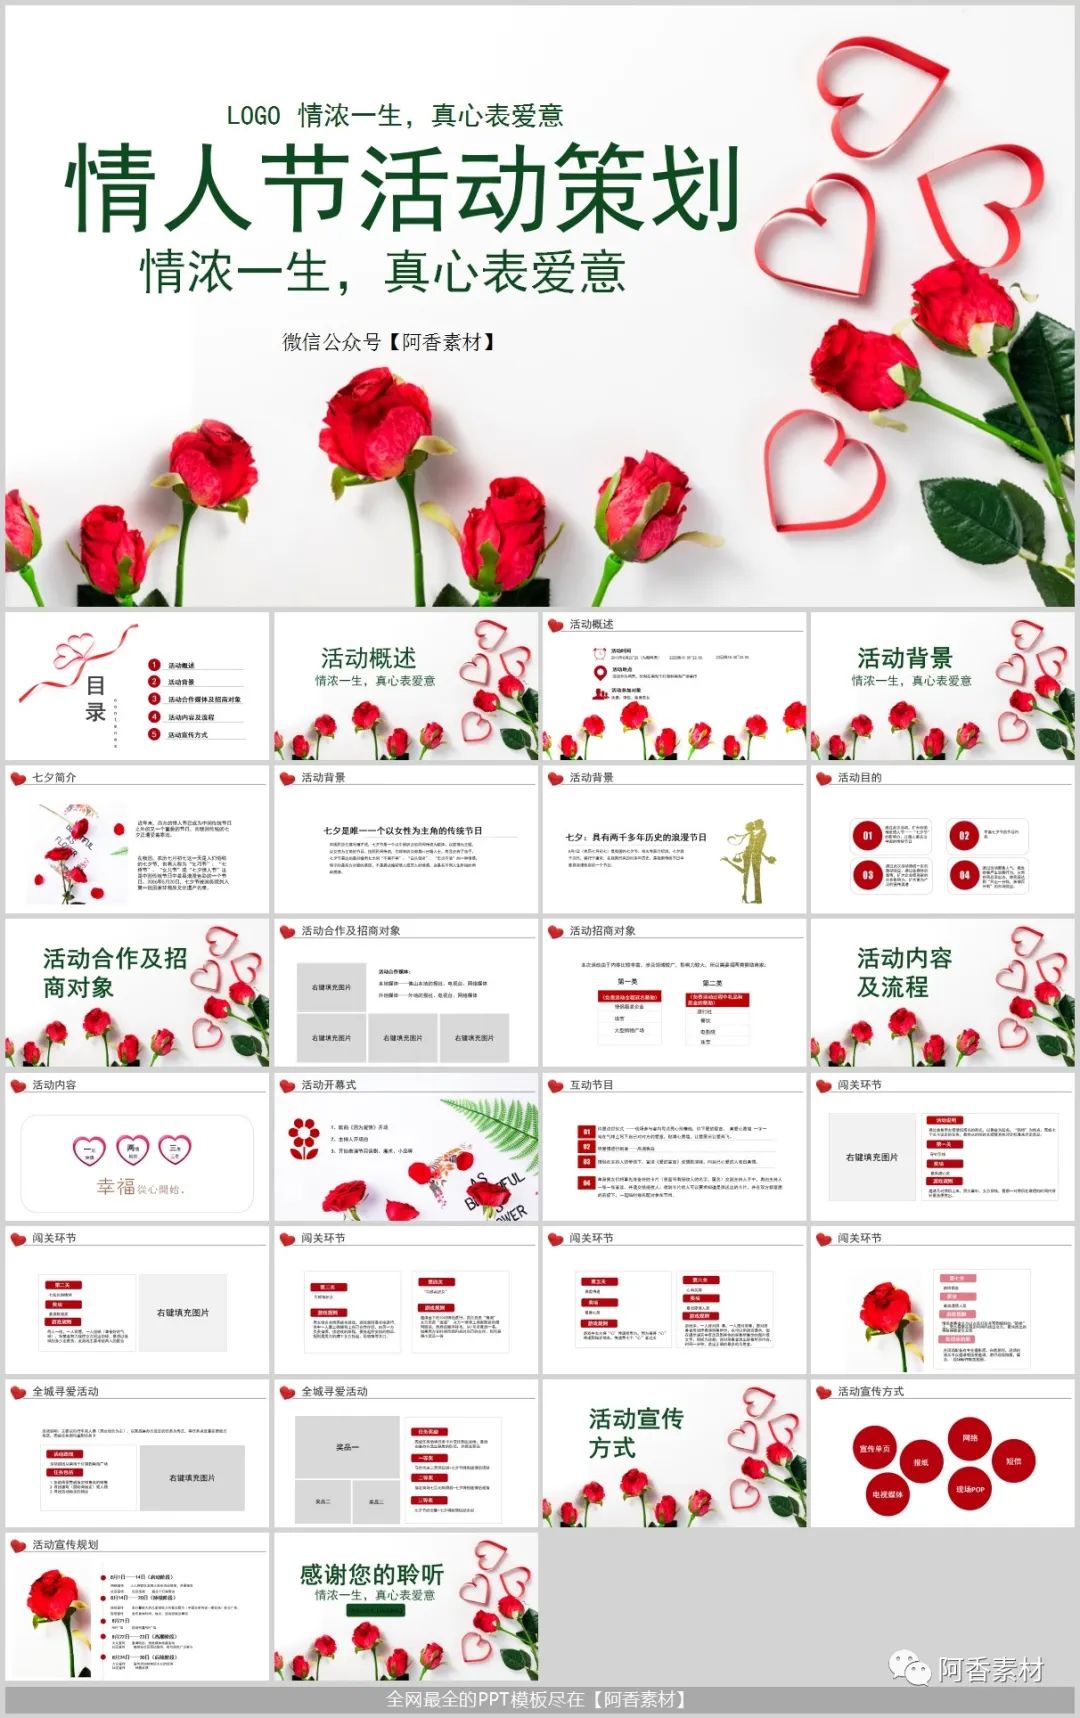 七夕婚礼策划团队展示浪漫婚礼海报_图片模板素材-稿定设计